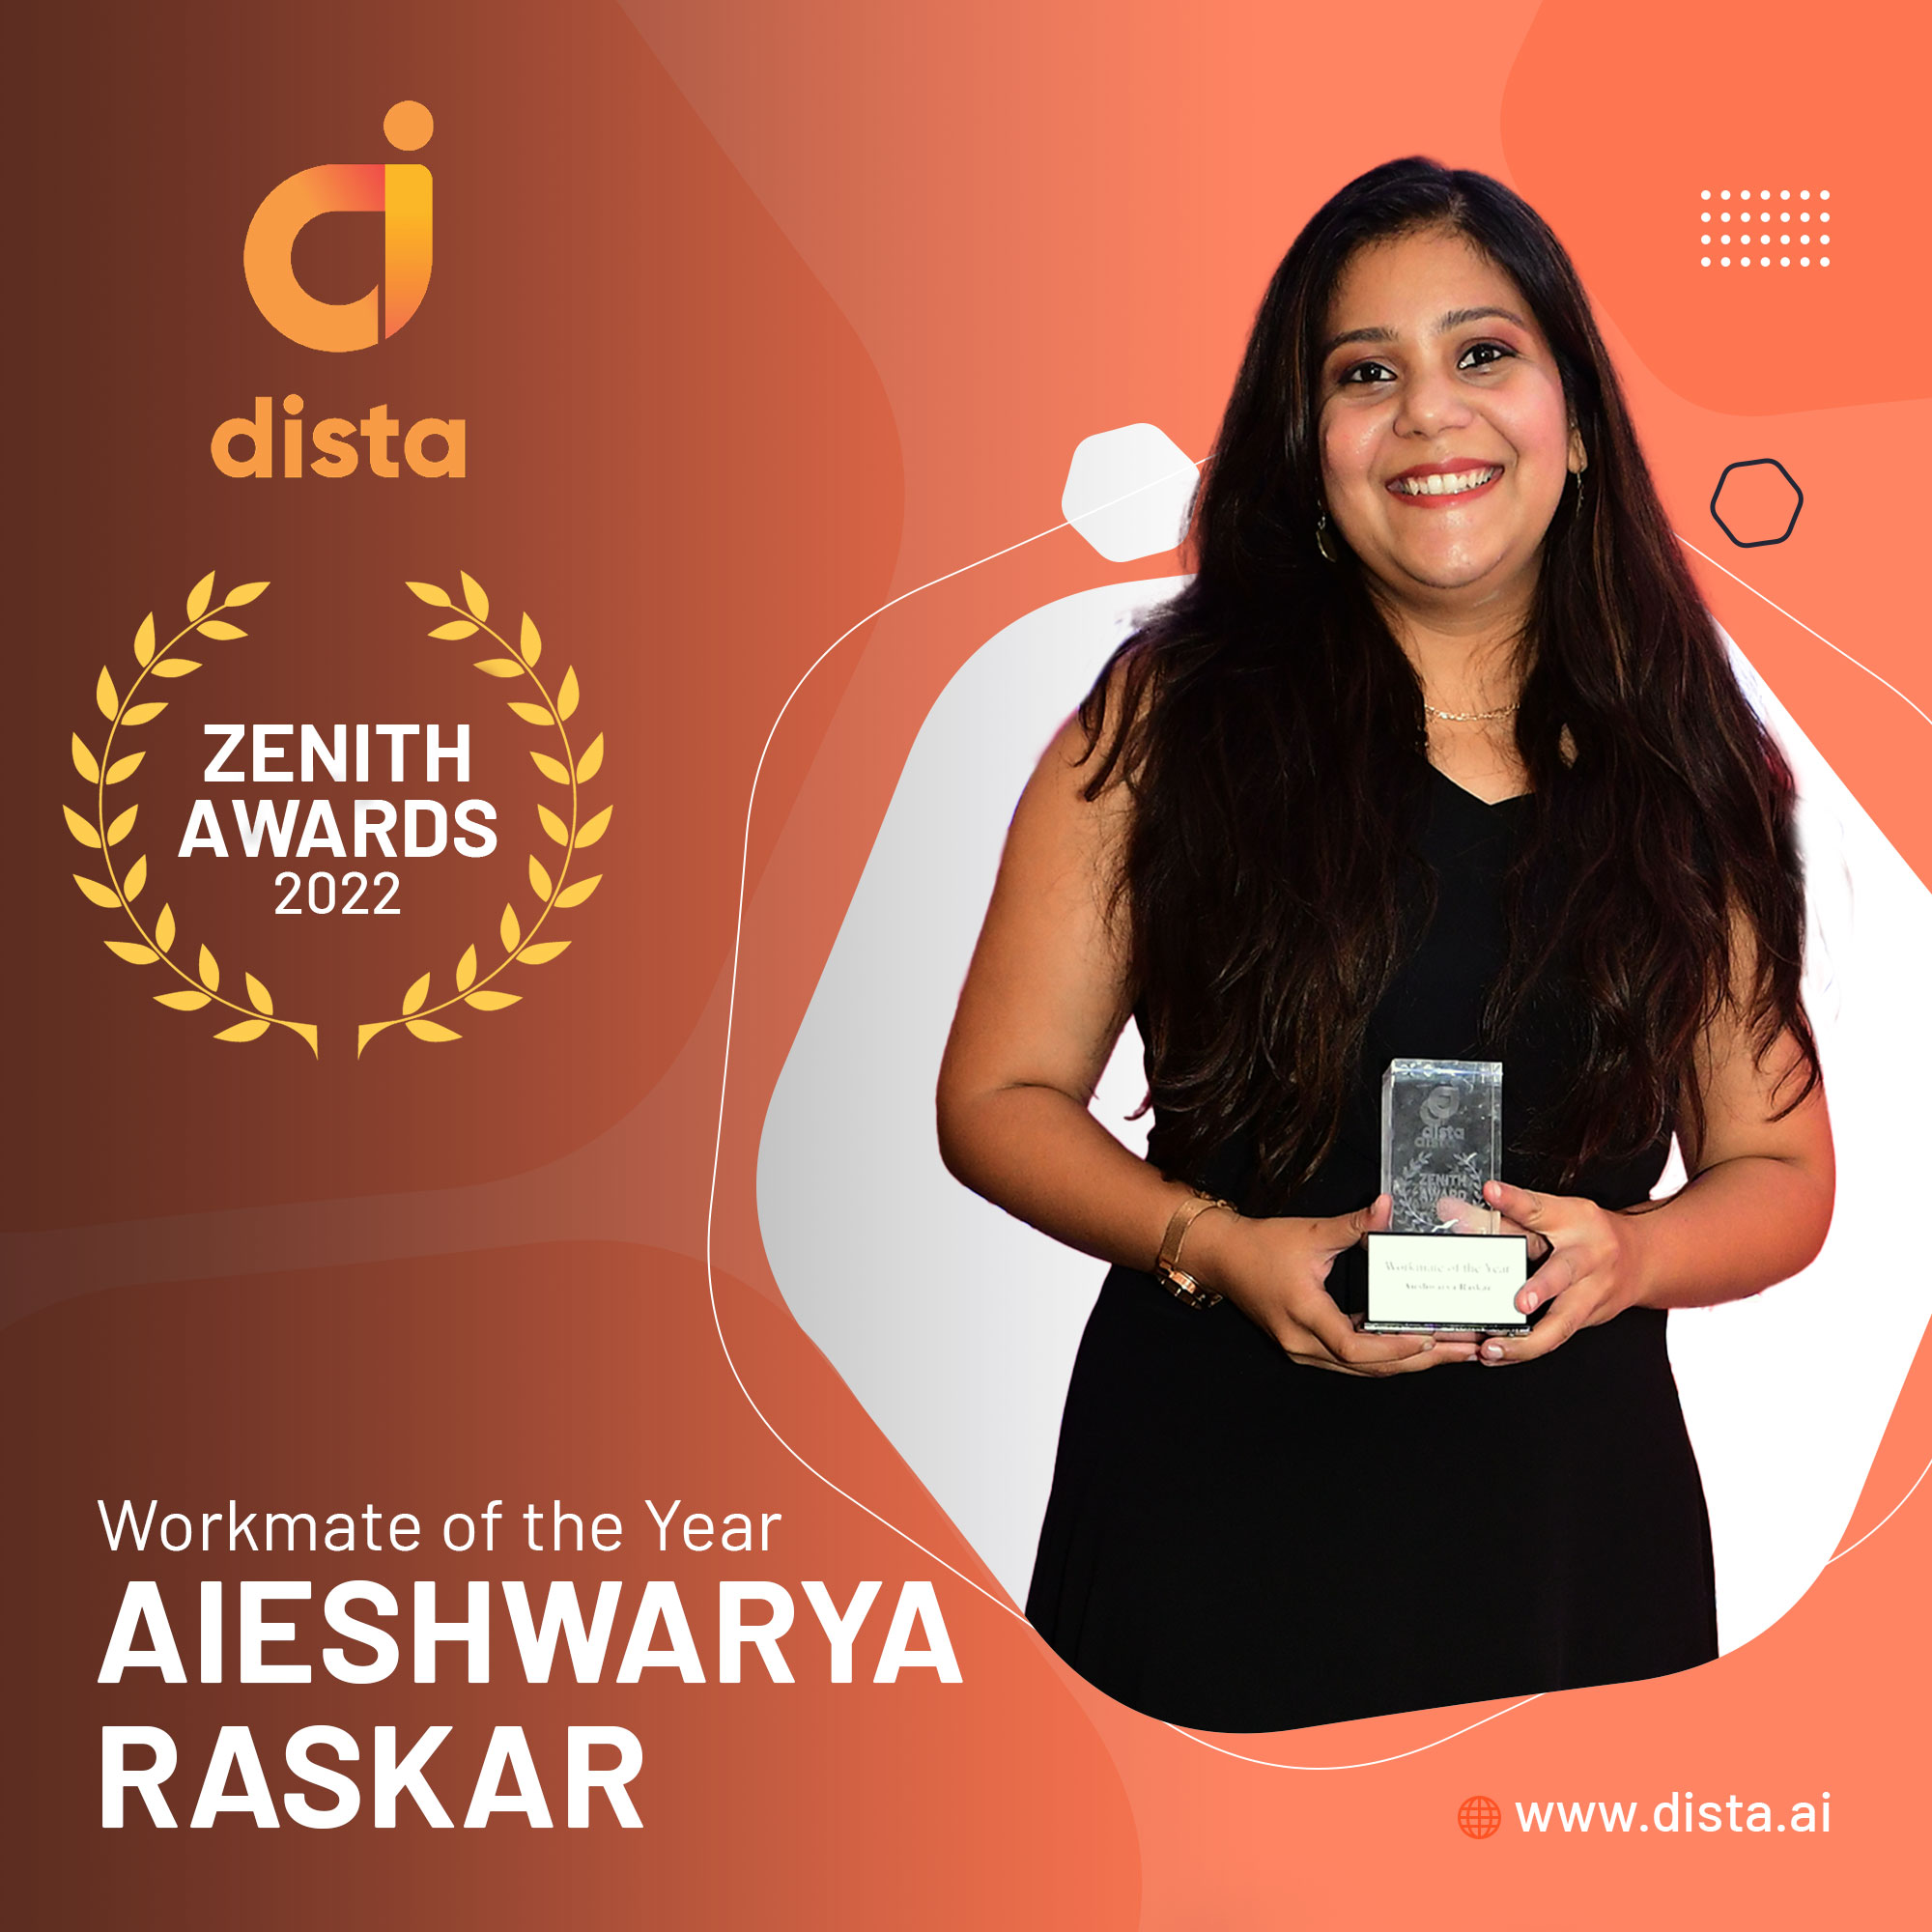 Aieshwarya Raskar - Dista Zenith Awards 2022